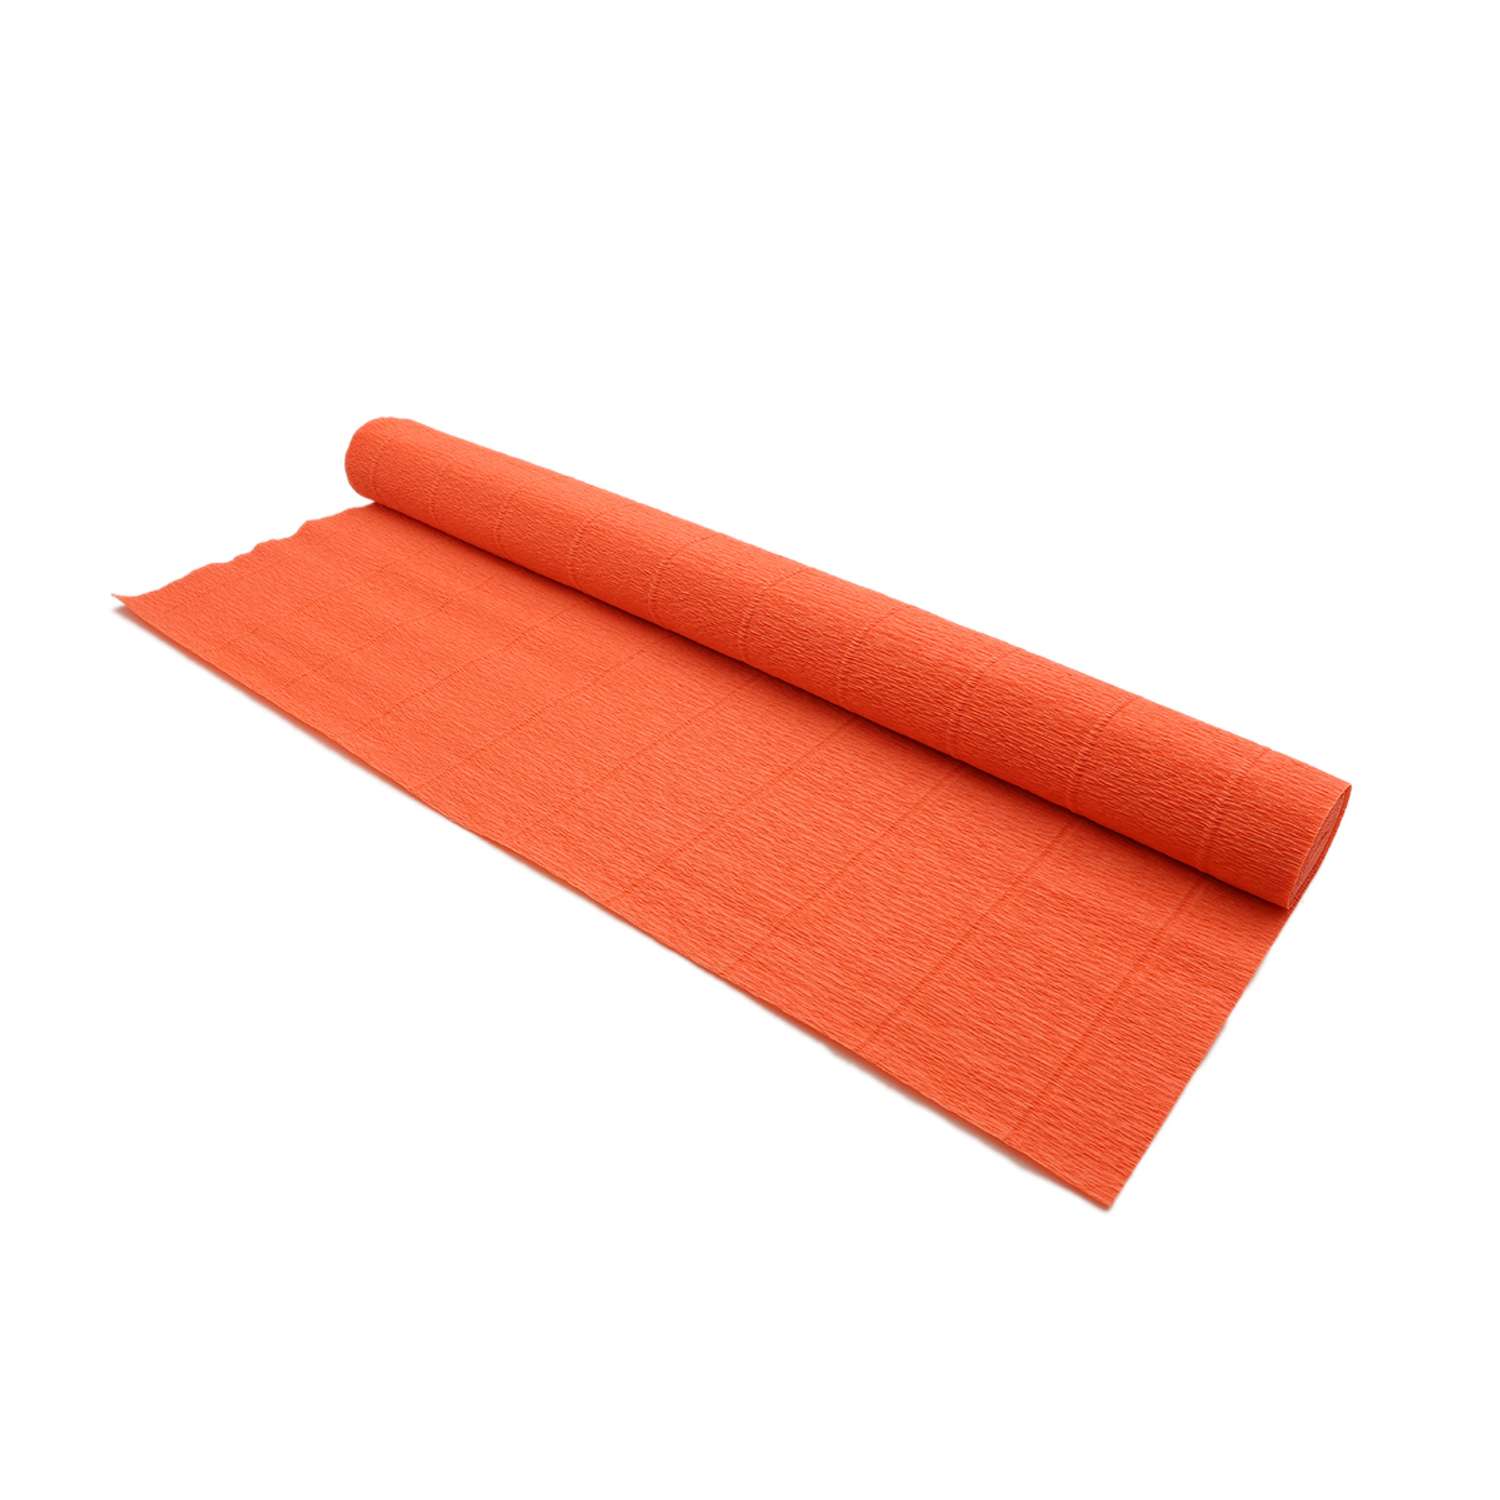 Бумага Айрис гофрированная креповая для творчества 50 см х 2.5 м 140 гр оранжевая - фото 3